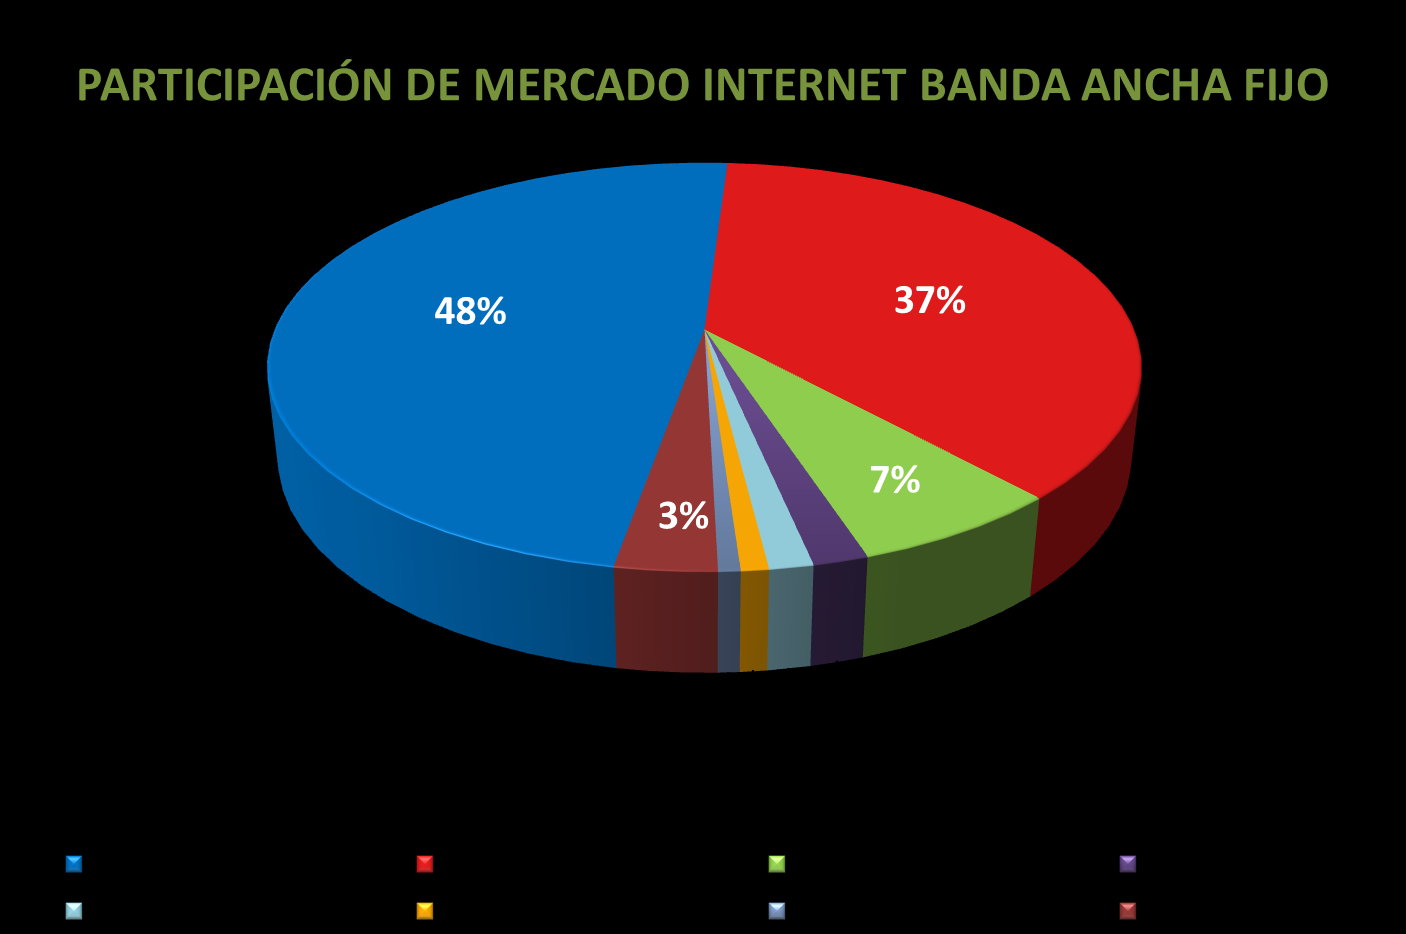 Figura B 10: Participación de mercado Internet banda ancha móvil al 2010.